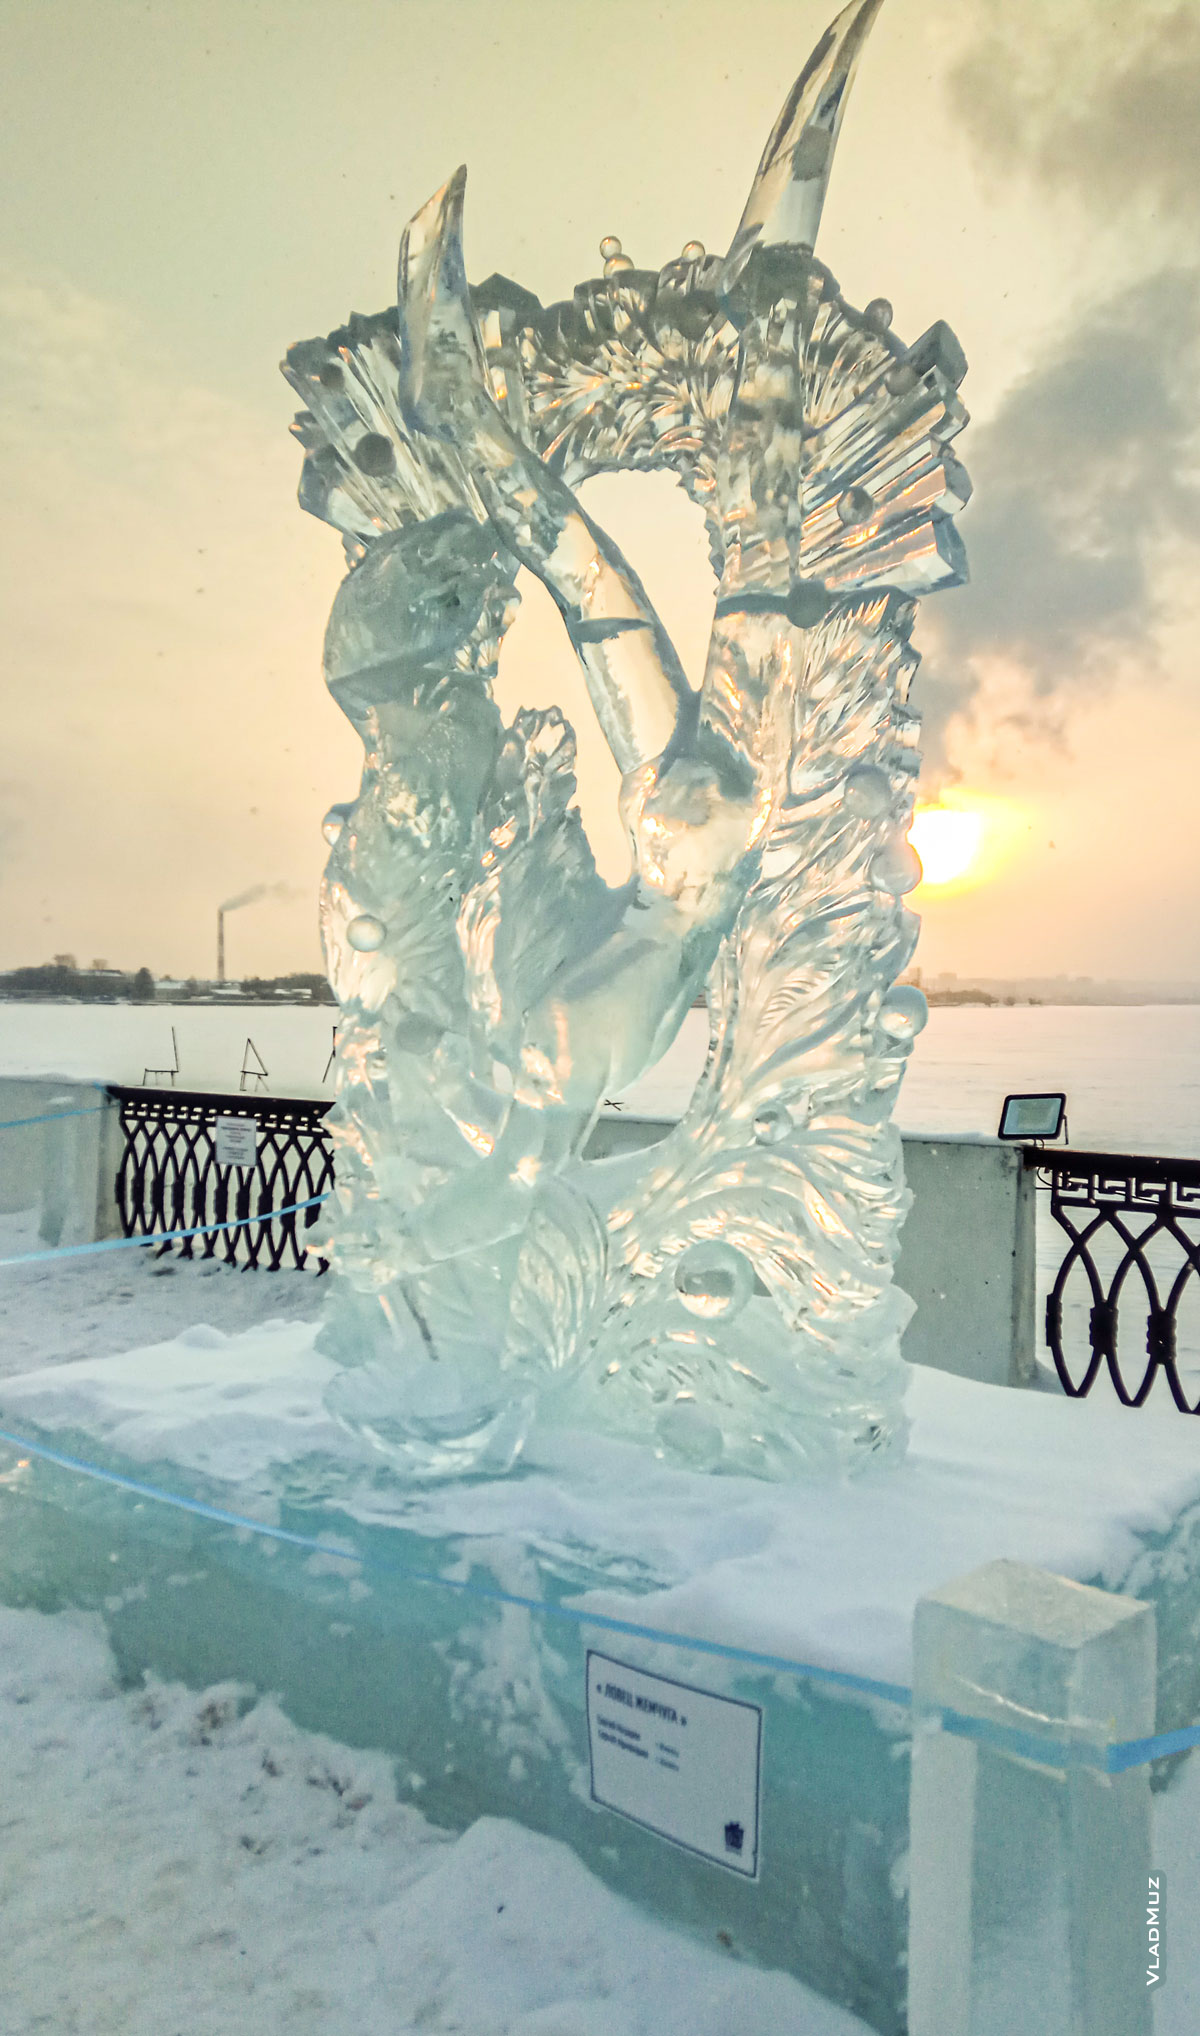 Фото ледовой скульптуры «Ловец жемчуга» на фестивале «Удмуртский лед» в Ижевске, занесенной снегом